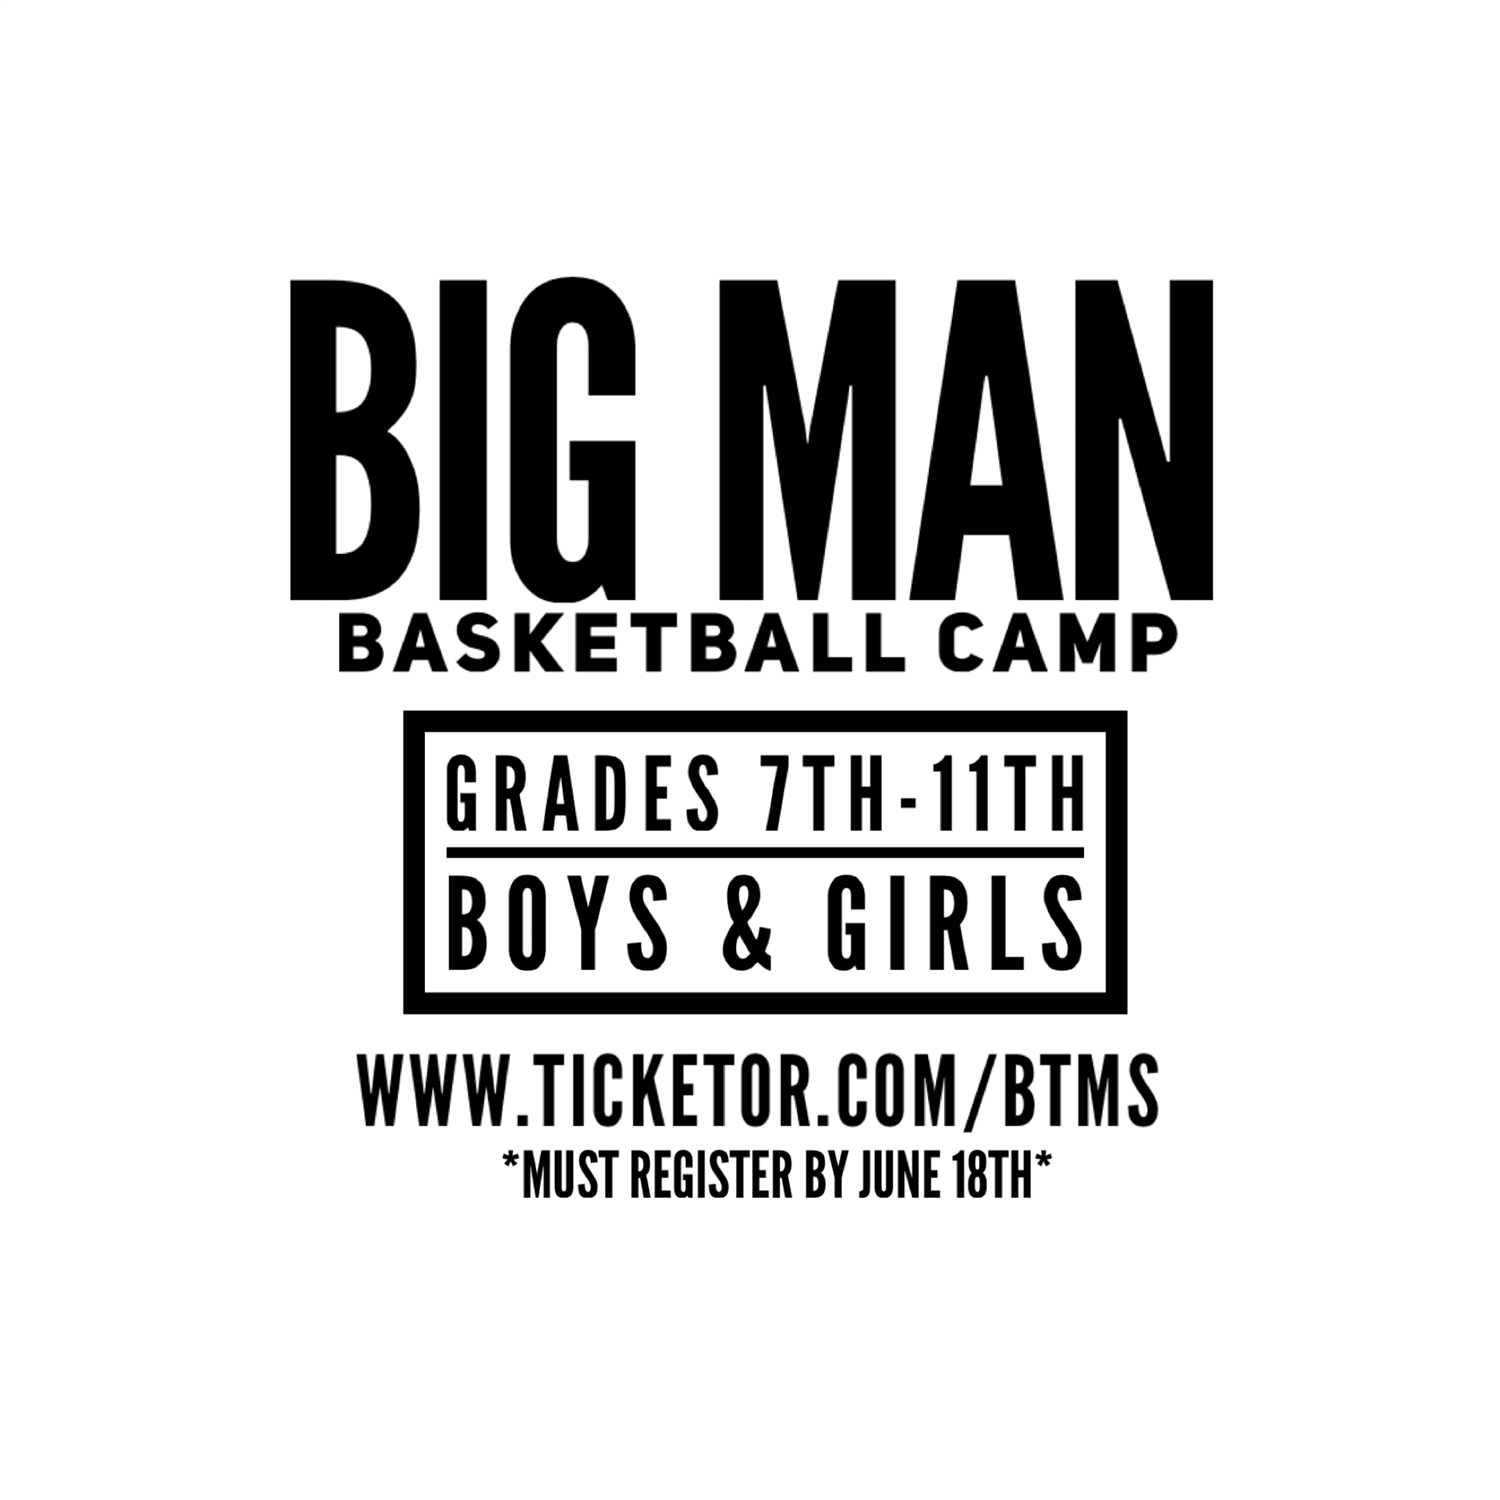 BIG MAN Basketball Camp Boys & Girls Grades 7th-11th on jun. 19, 19:00@Moraine Valley - Compra entradas y obtén información enBTMS LLC 